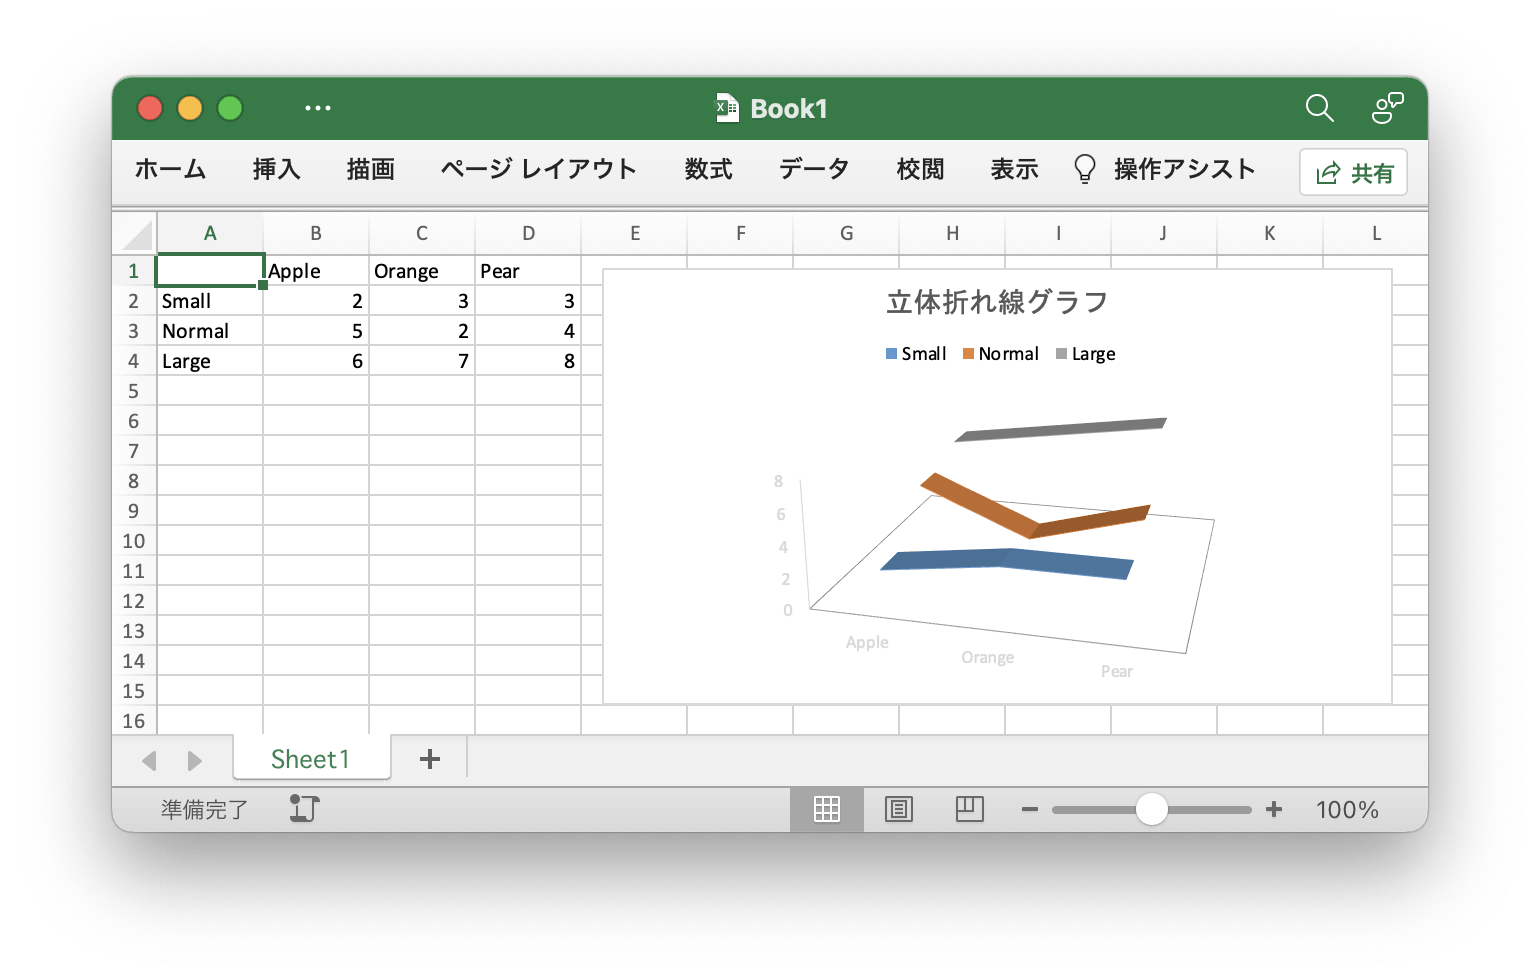 Go 言語を使用して Excel ドキュメントで 立体折れ線グラフ 作成する